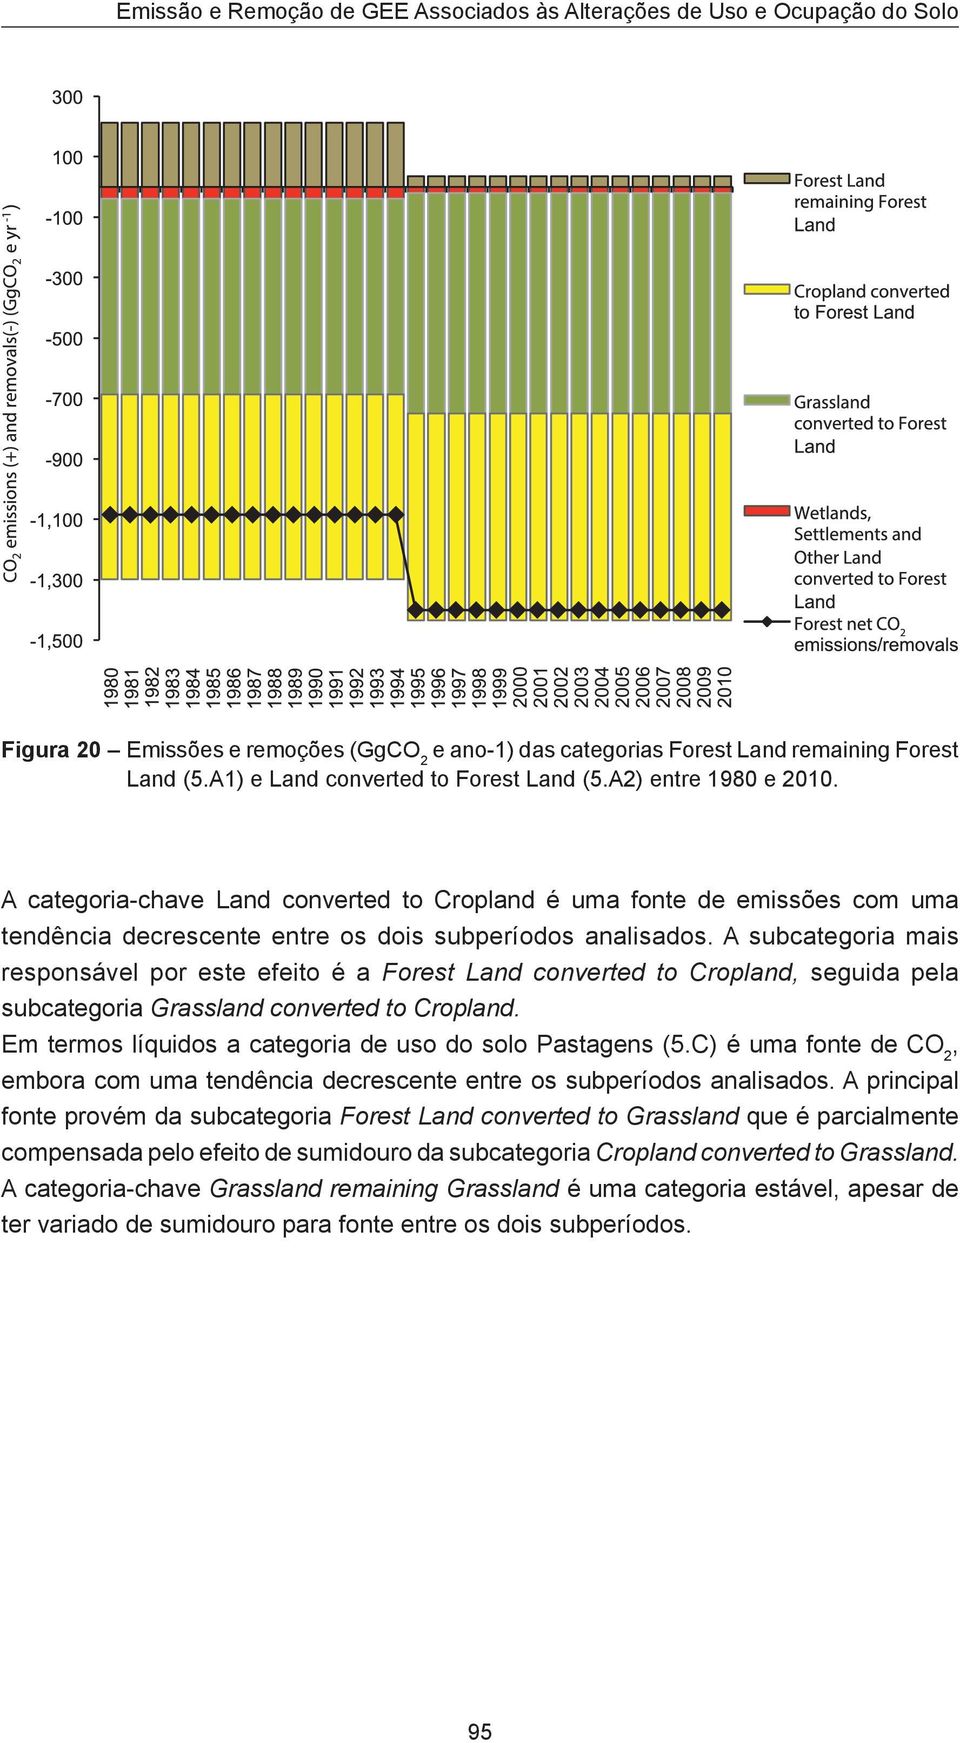 A subcategoria mais responsável por este efeito é a Forest Land converted to Cropland, seguida pela subcategoria Grassland converted to Cropland.